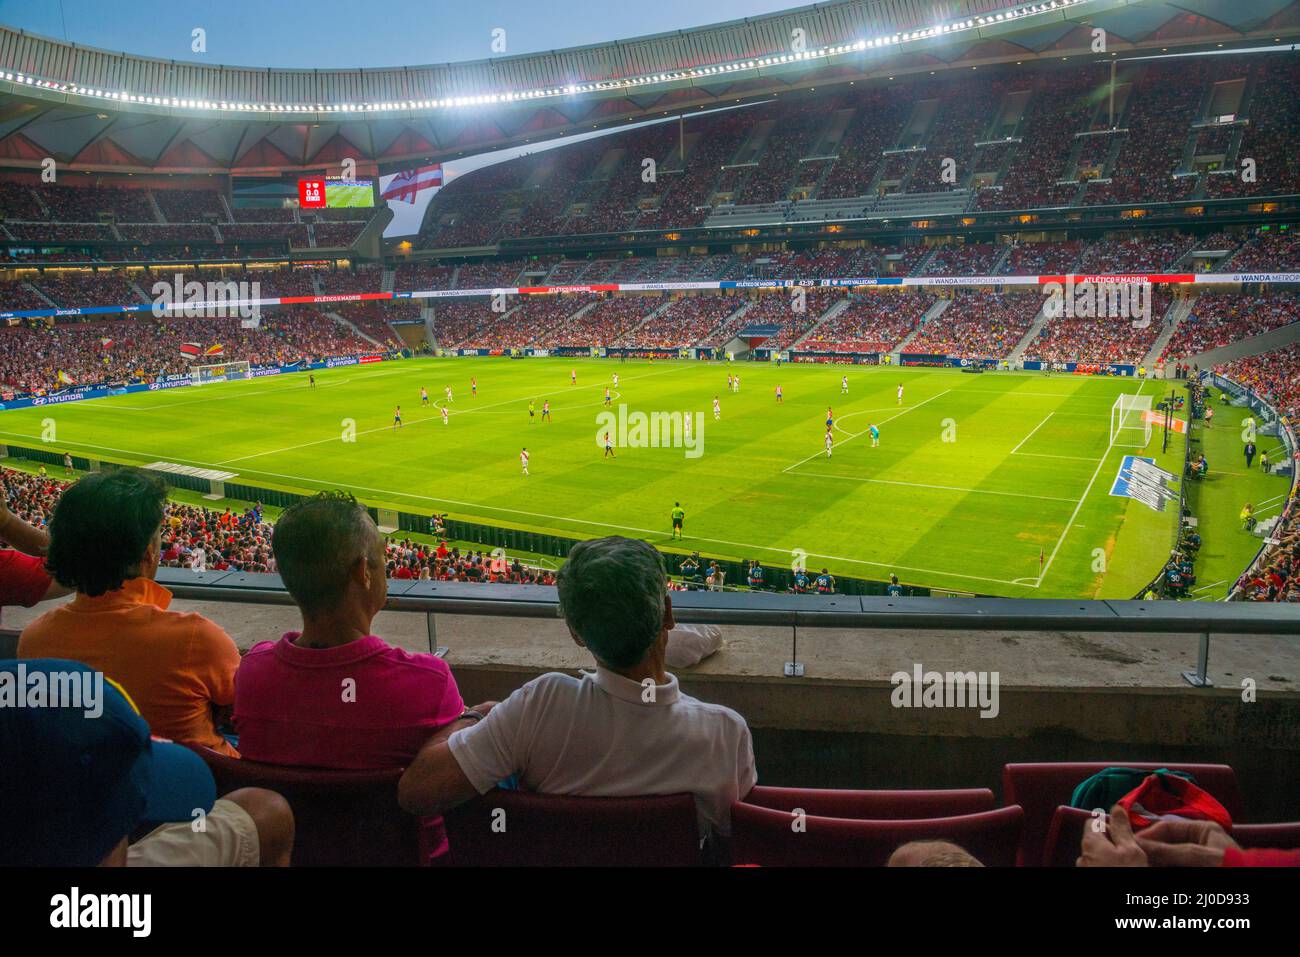 Wanda Metropolitano Stadion während des Fußballspiels. Madrid, Spanien. Stockfoto